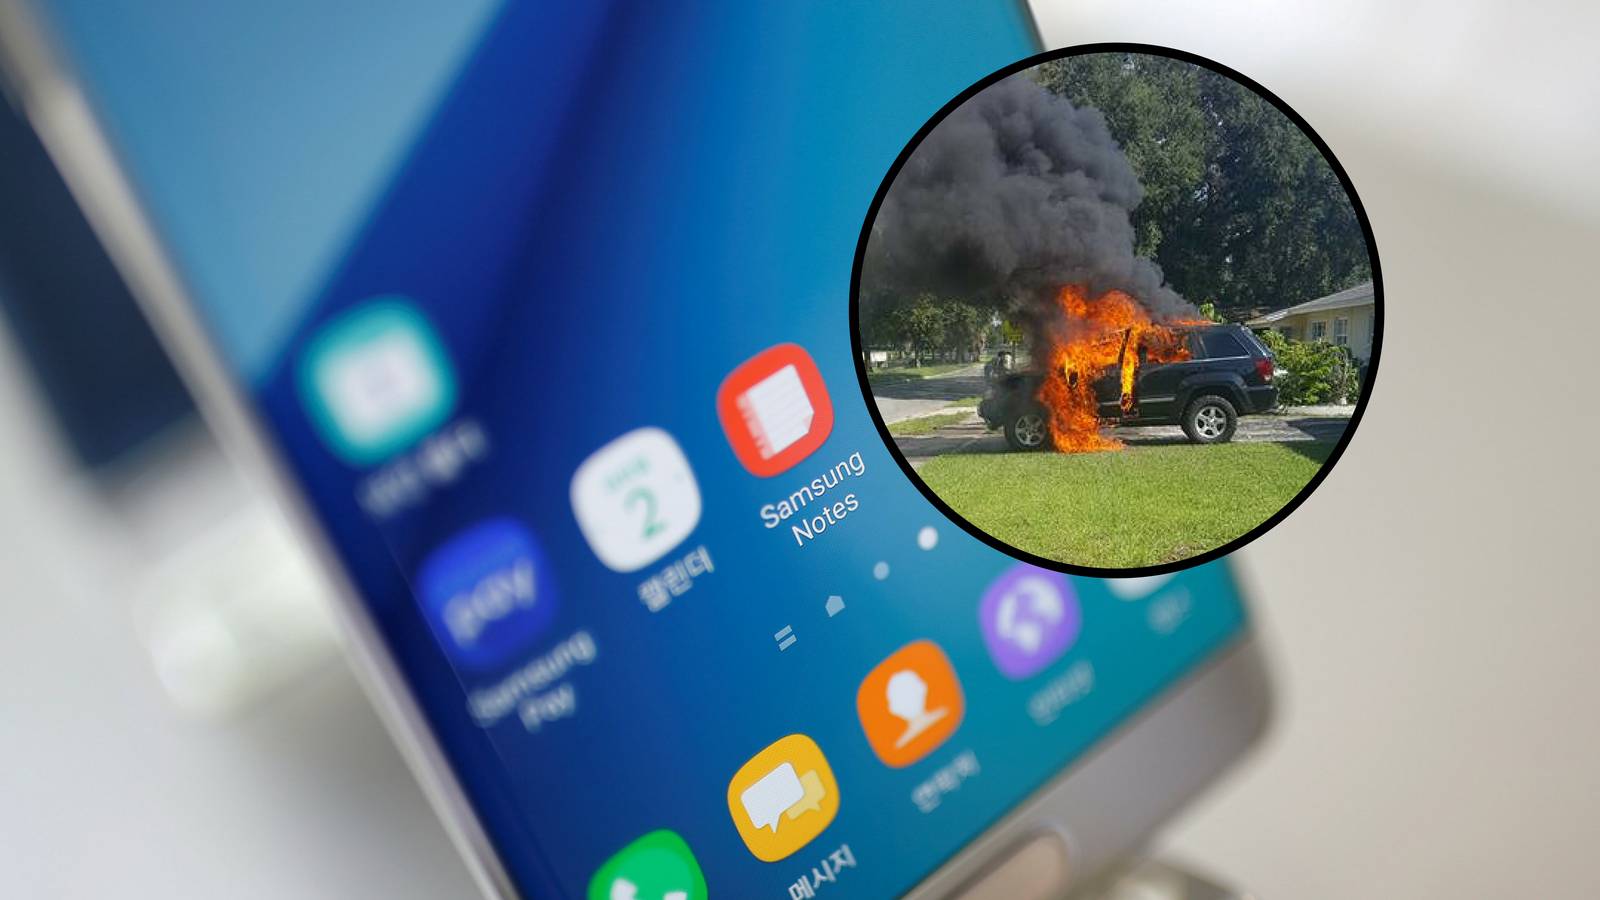 Tvrde da im je povučeni Galaxy Note 7 zapalio Jeep i garažu